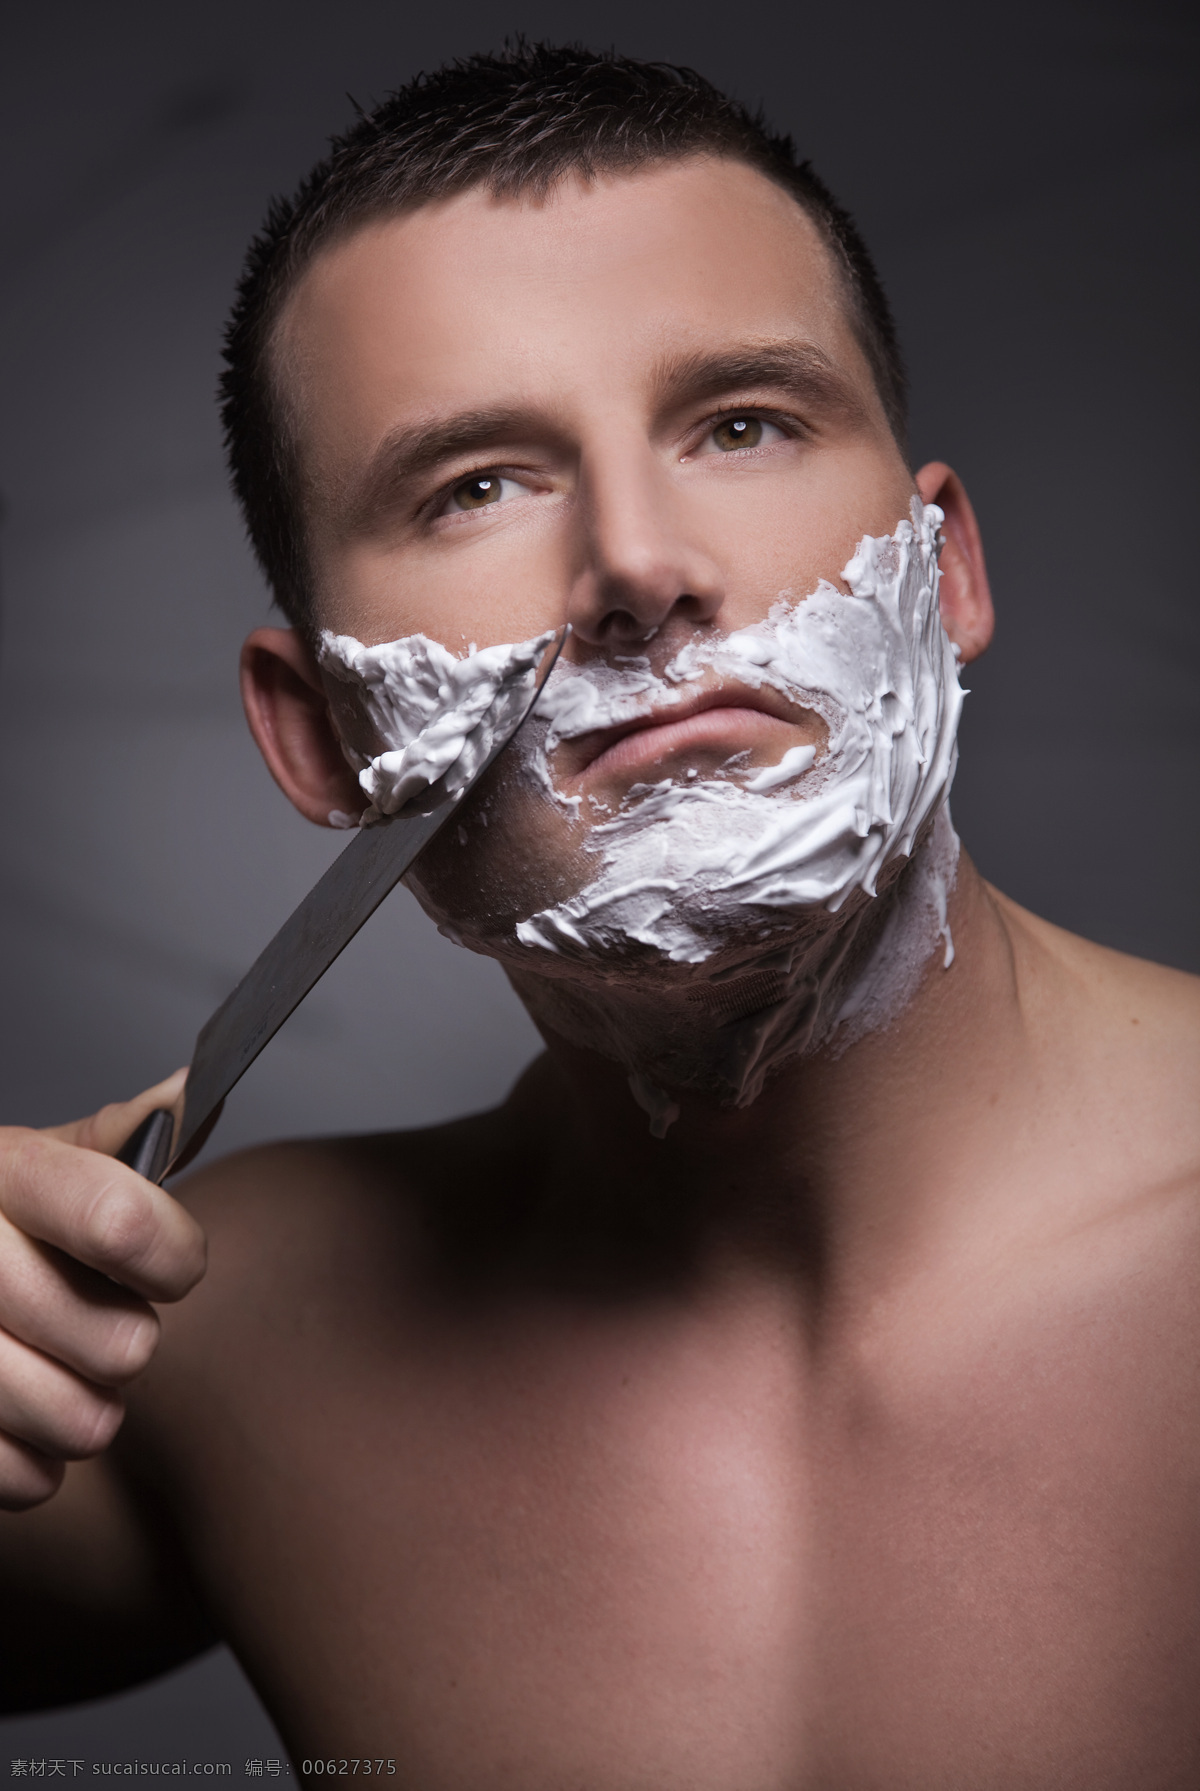 刮胡子 男性 泡沫 水果刀 危险 半裸 性感 男人图片 人物图片